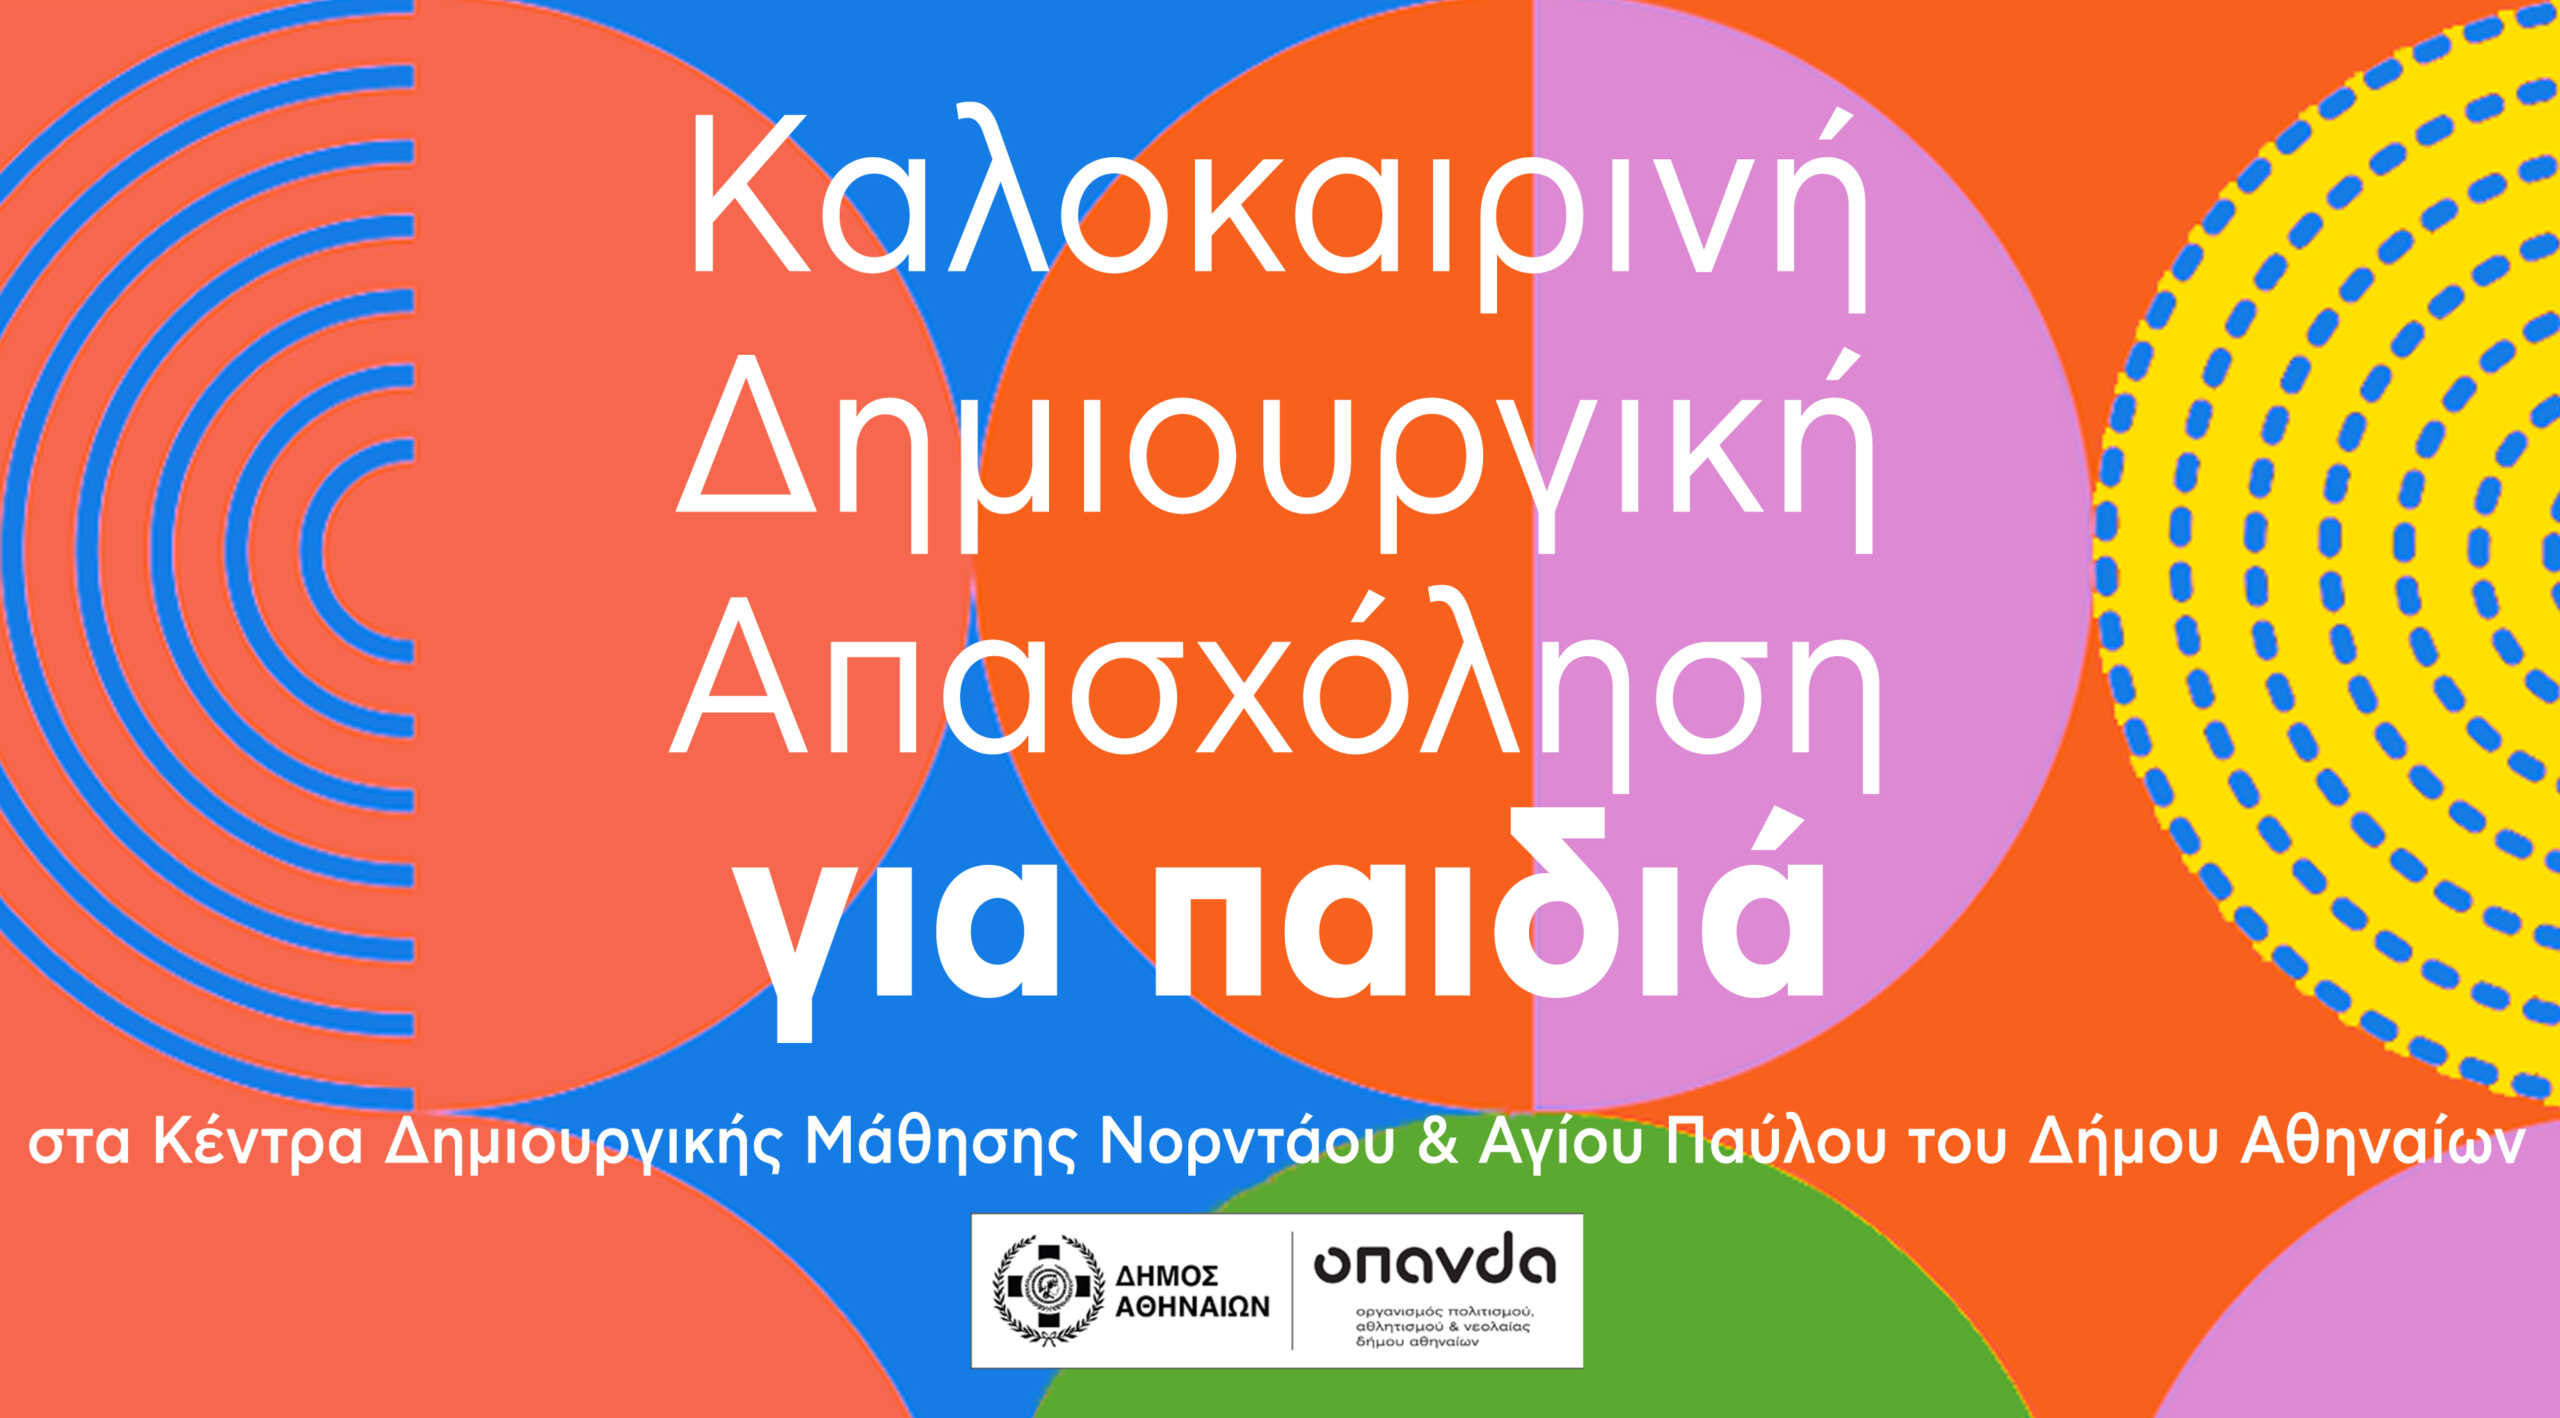 Δήμος Αθηναίων: Δωρεάν καλοκαιρινή δημιουργική απασχόληση για παιδιά ηλικίας 6 – 12 ετών στα Κέντρα Δημιουργικής Μάθησης Νορντάου και Αγίου Παύλου